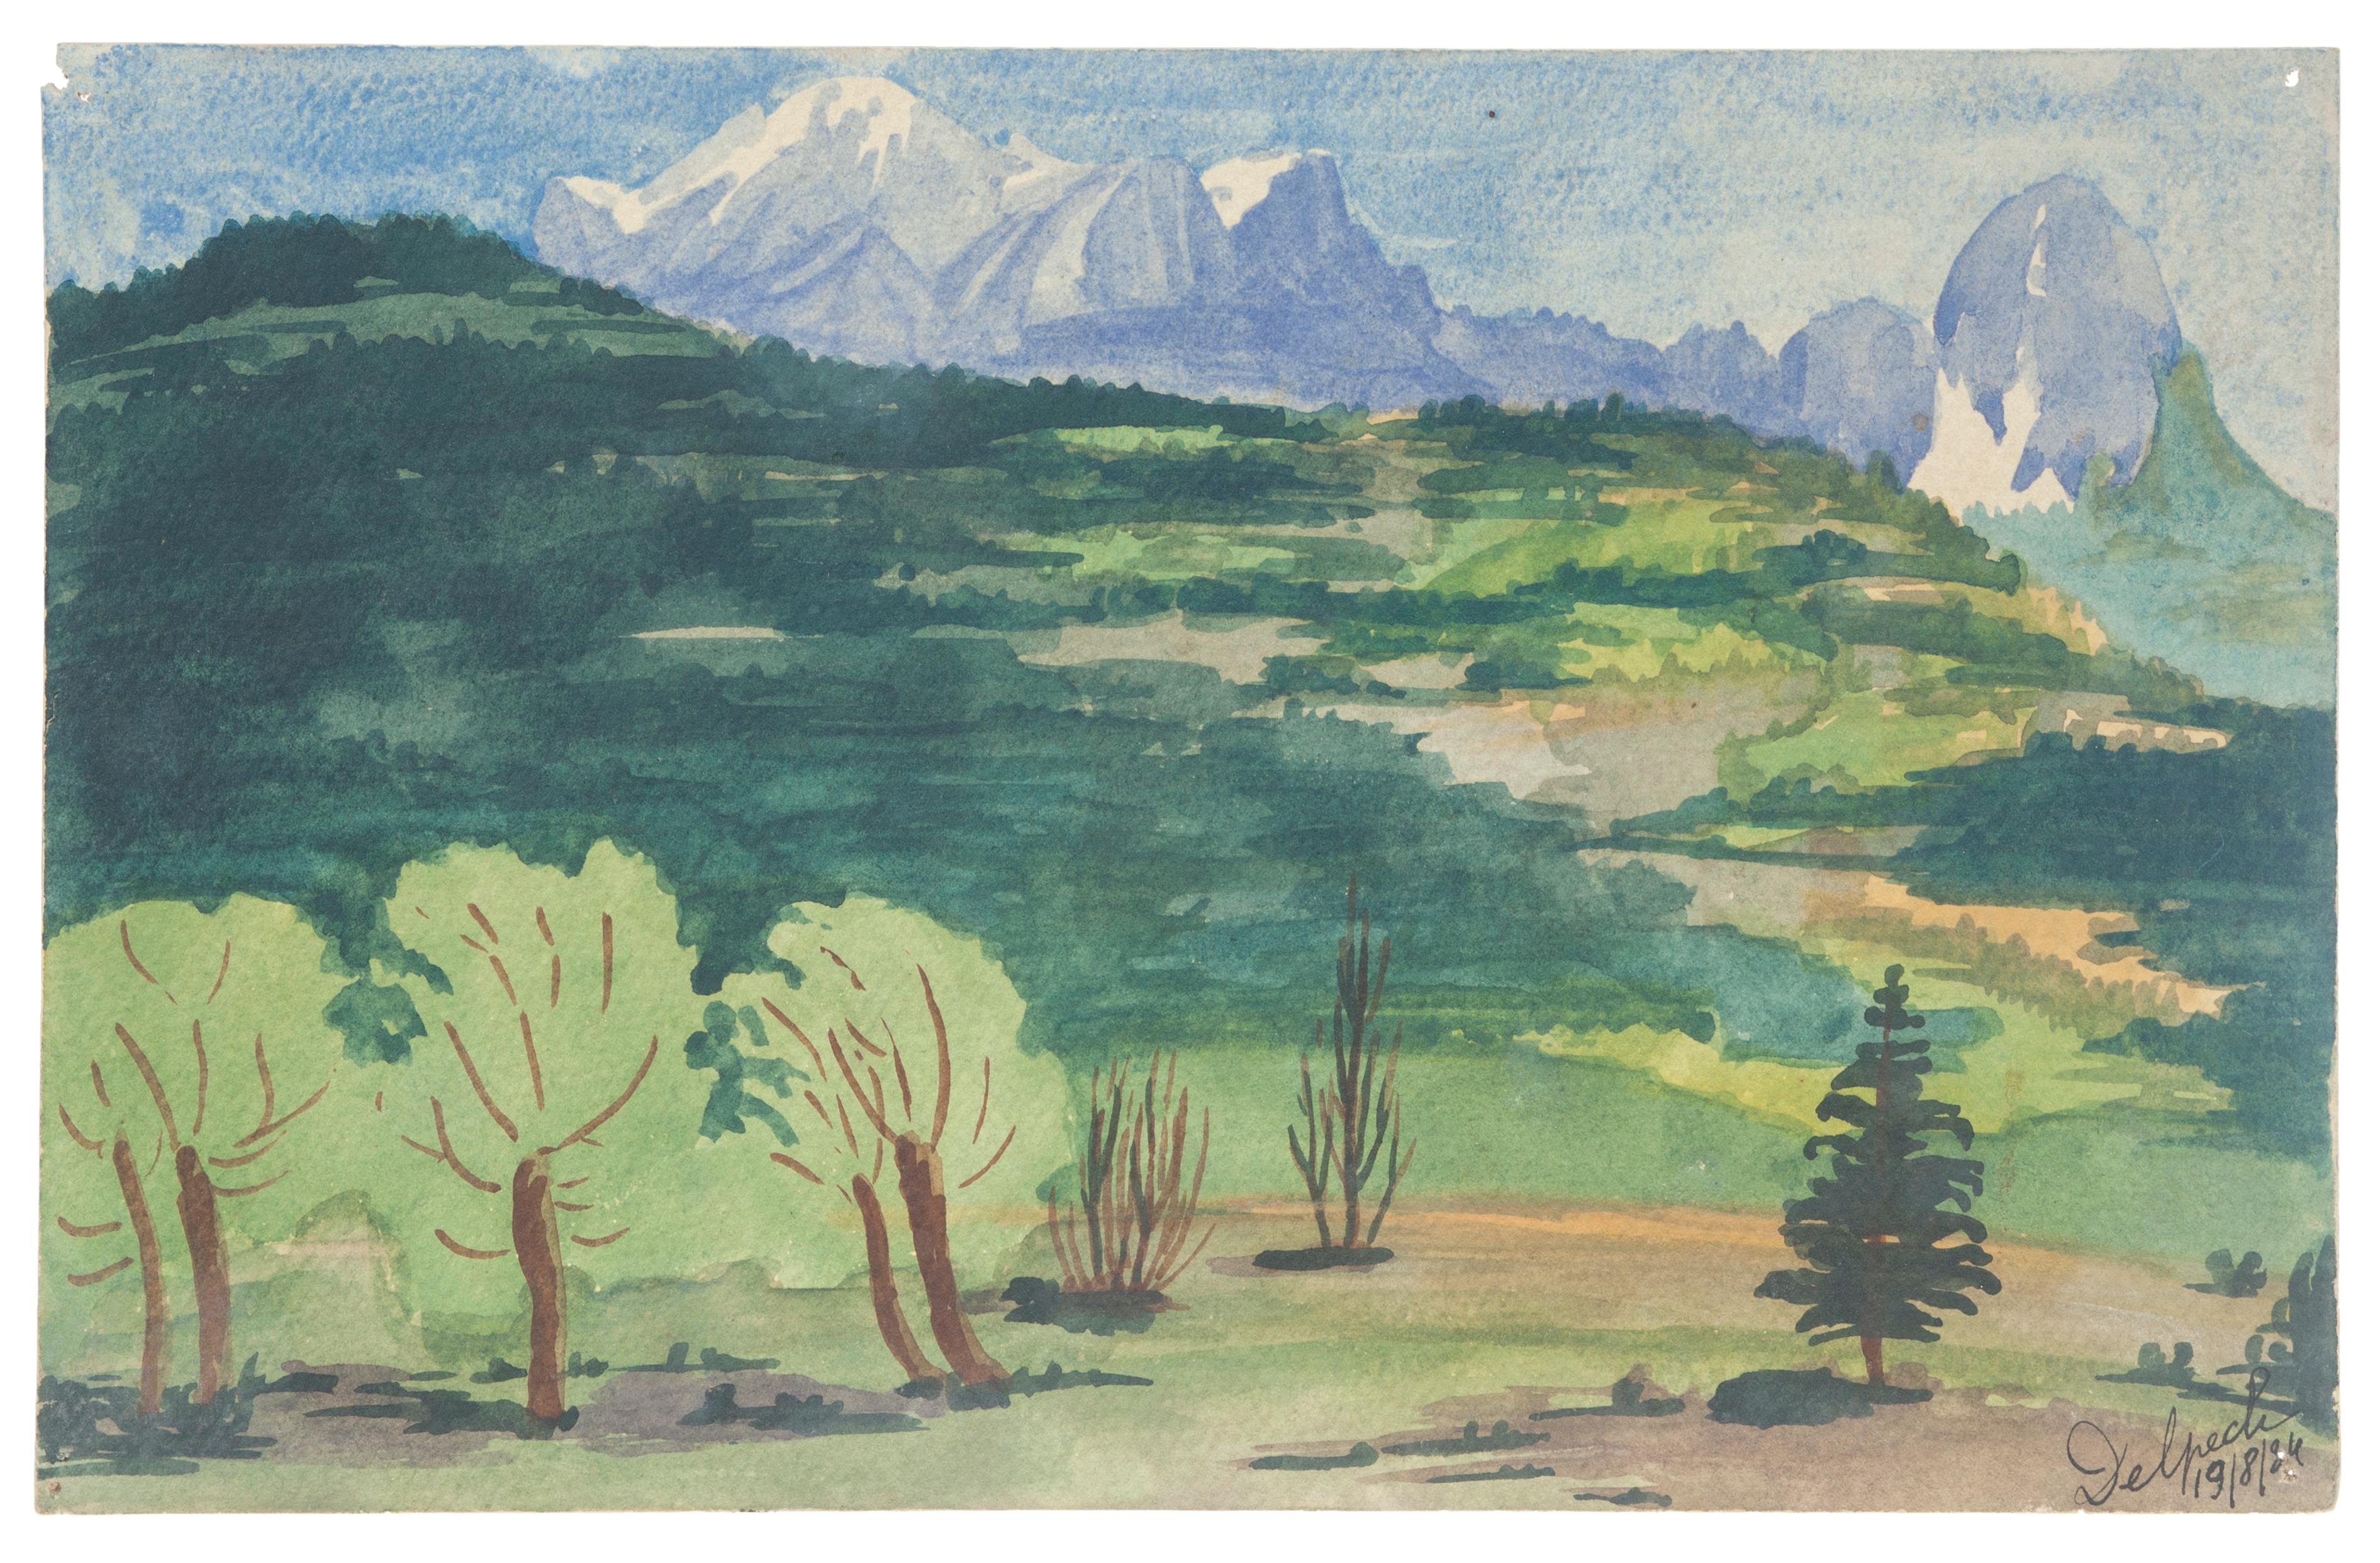 "Landschaft" ist eine Originalzeichnung in Aquarell auf Papier von Jean Delpech (1916-1988). 
Der Erhaltungszustand der Kunstwerke ist sehr gut.

Blattgröße: 14,8 x 23,4 cm.

Das Kunstwerk stellt eine schöne Landschaft mit lebendigen Farben dar, die